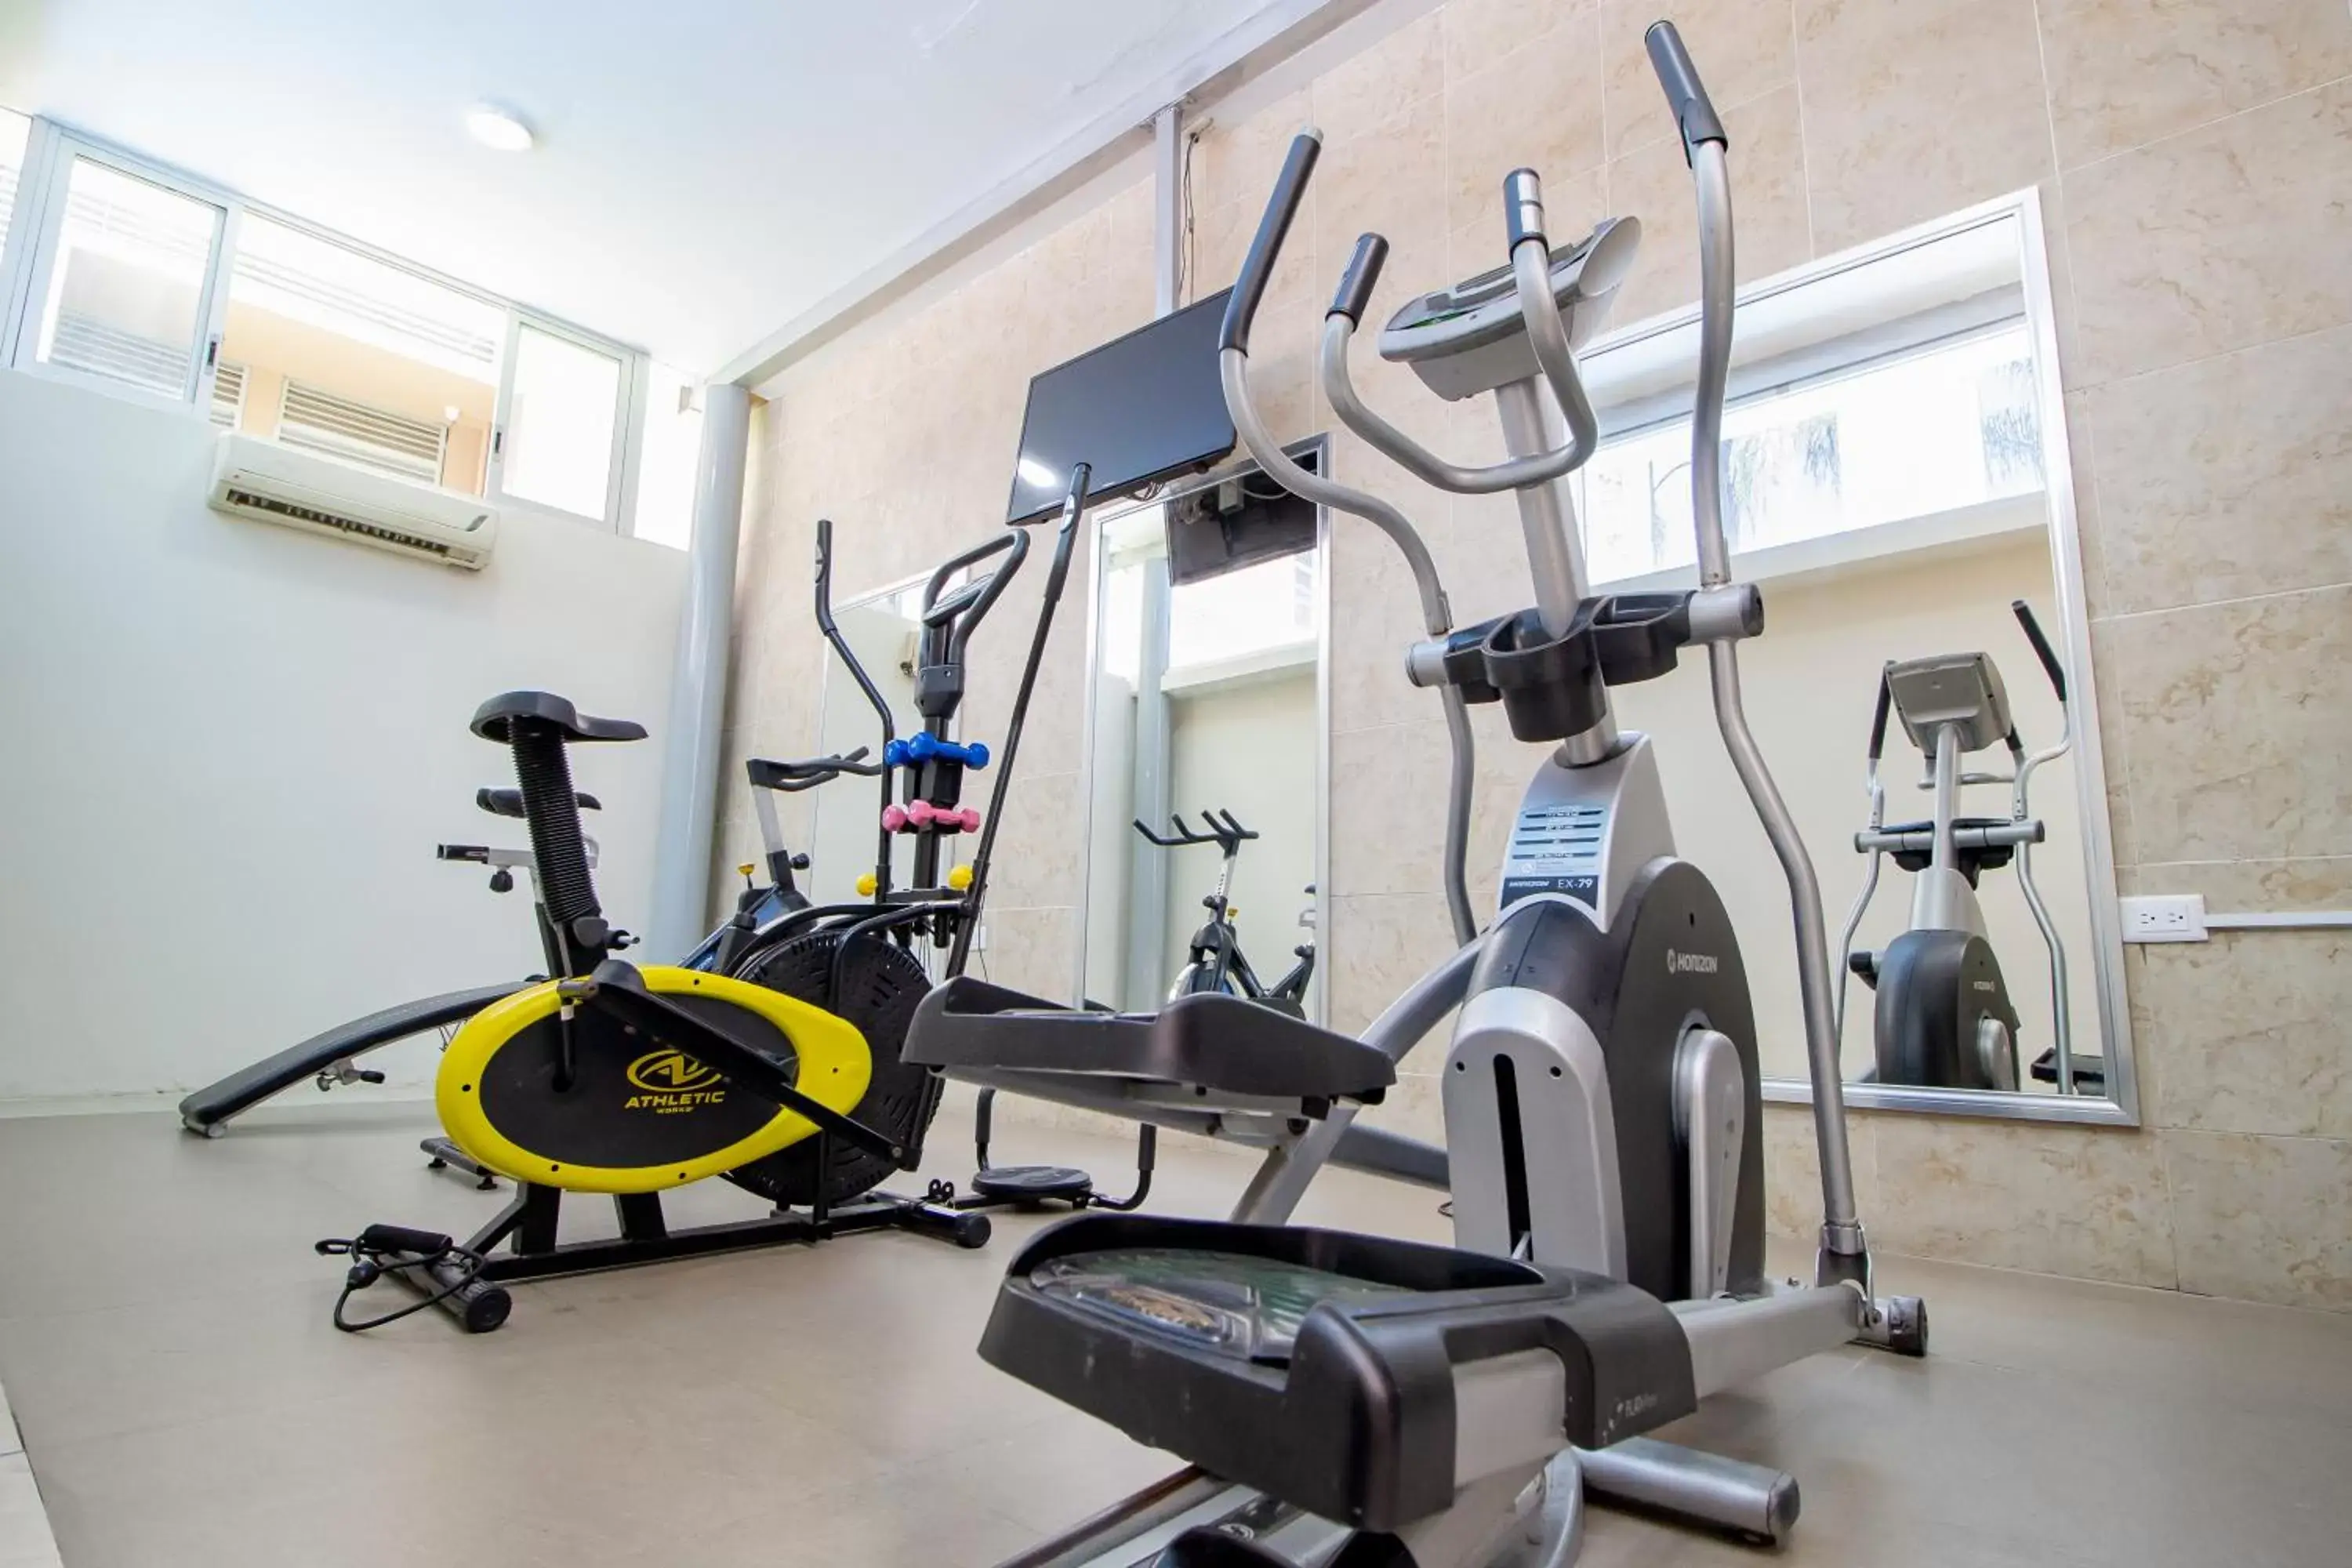 Fitness centre/facilities, Fitness Center/Facilities in Hotel El Español Paseo de Montejo